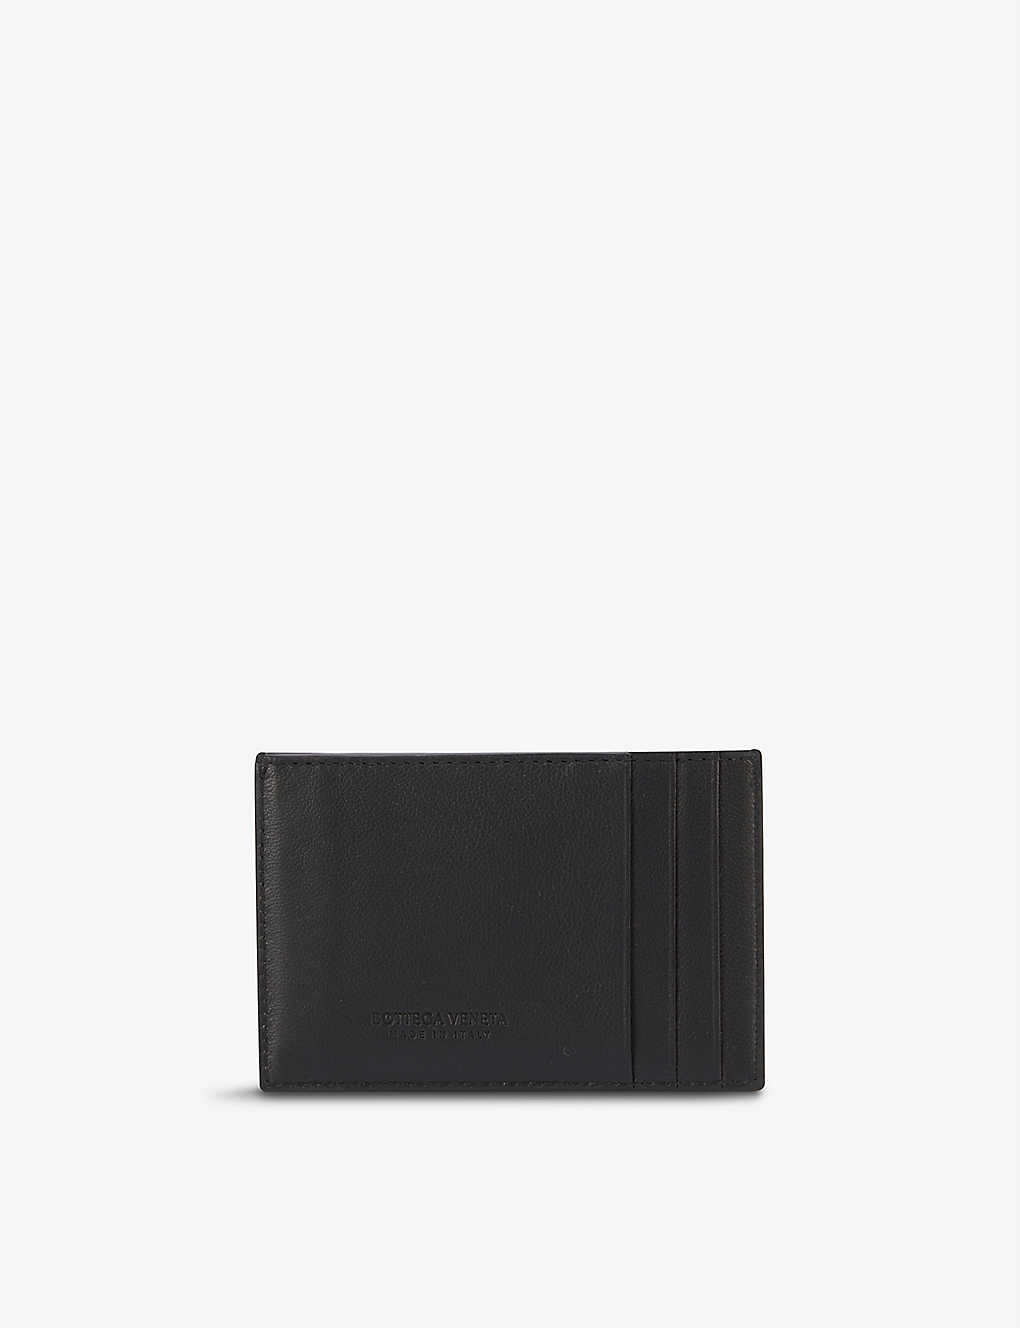 Bottega Veneta Intrecciato Woven Leather Card Holder In Black Gold